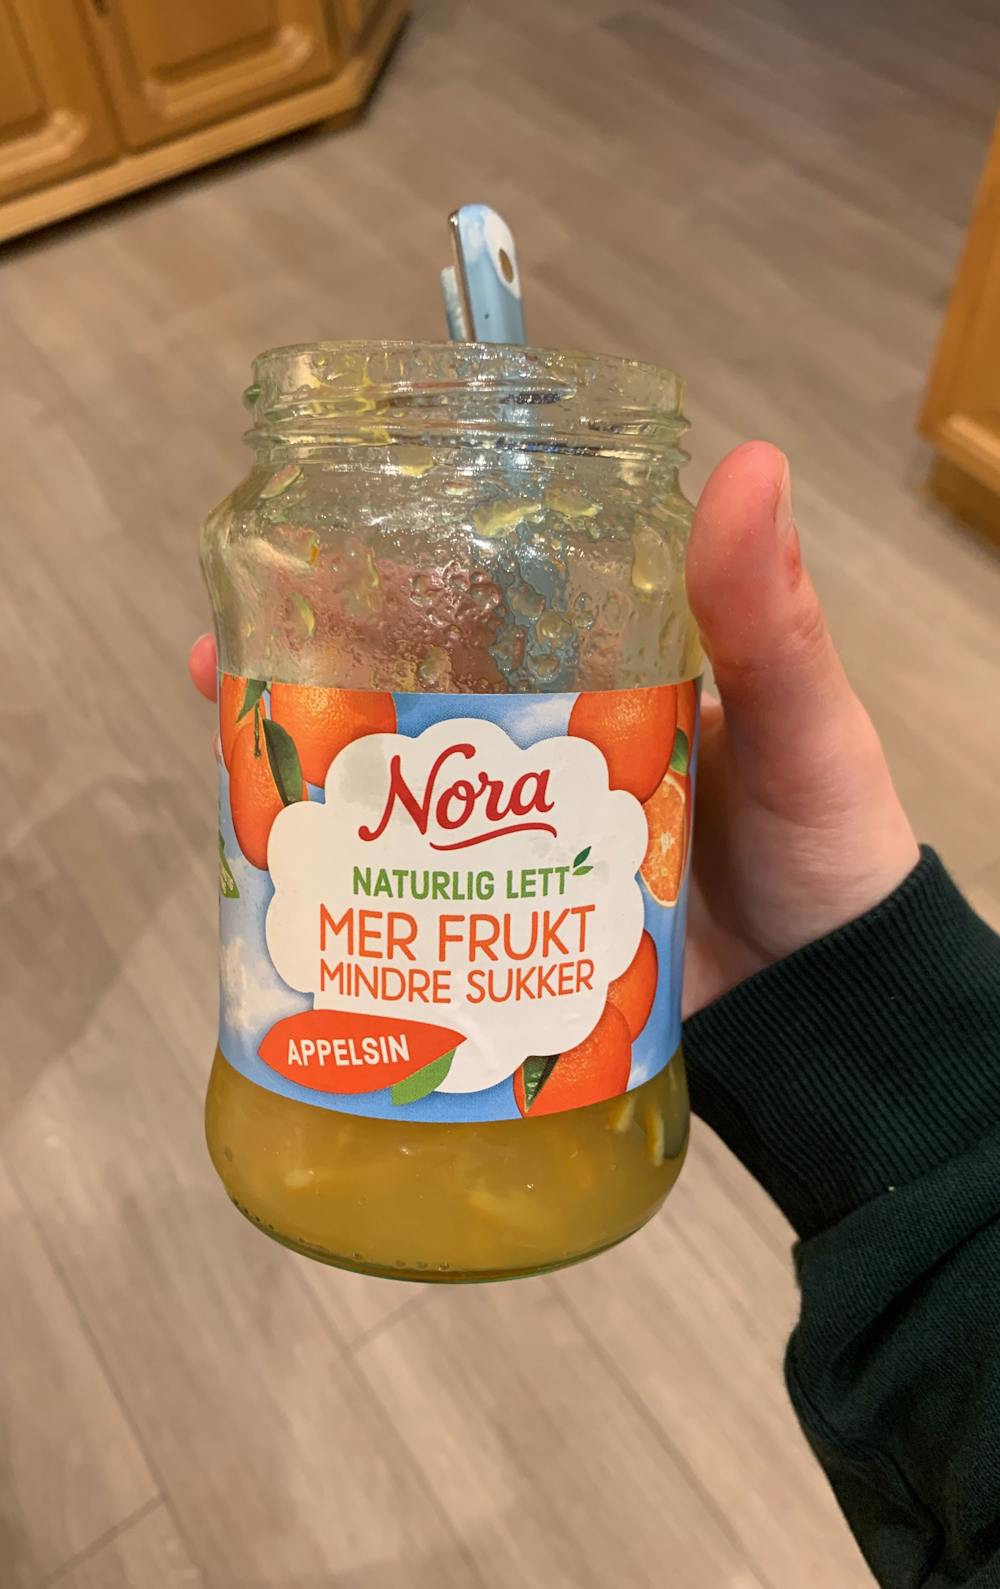 Naturlig lett appelsinsyltetøy, Nora